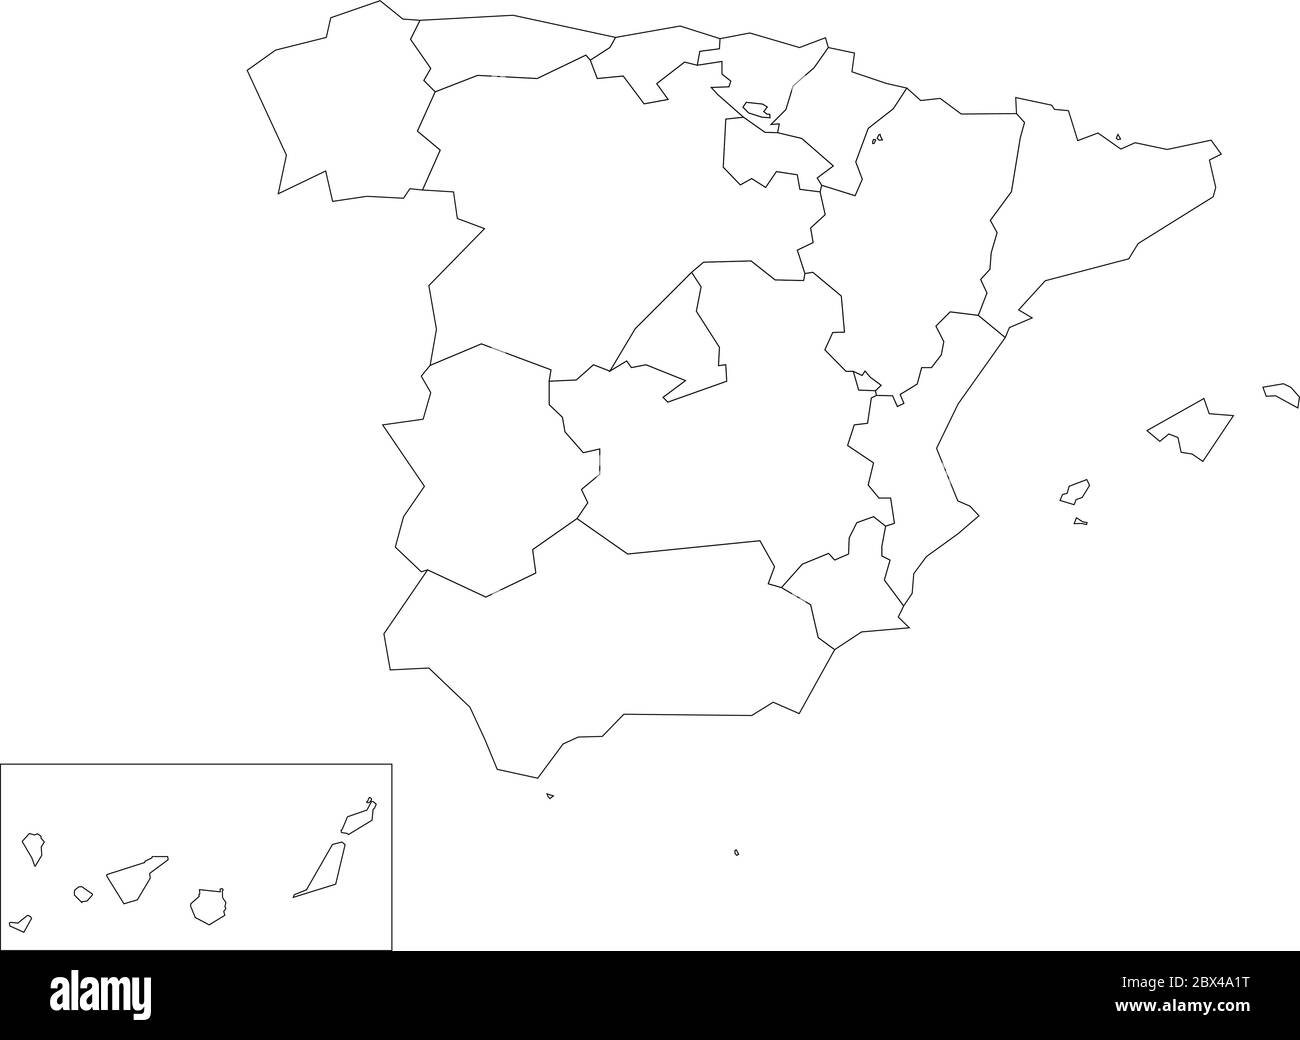 Karte von Spanien aufgeteilt in 17 administrative autonome Gemeinden. Einfache dünne schwarze Umrandung auf weißem Hintergrund. Stock Vektor